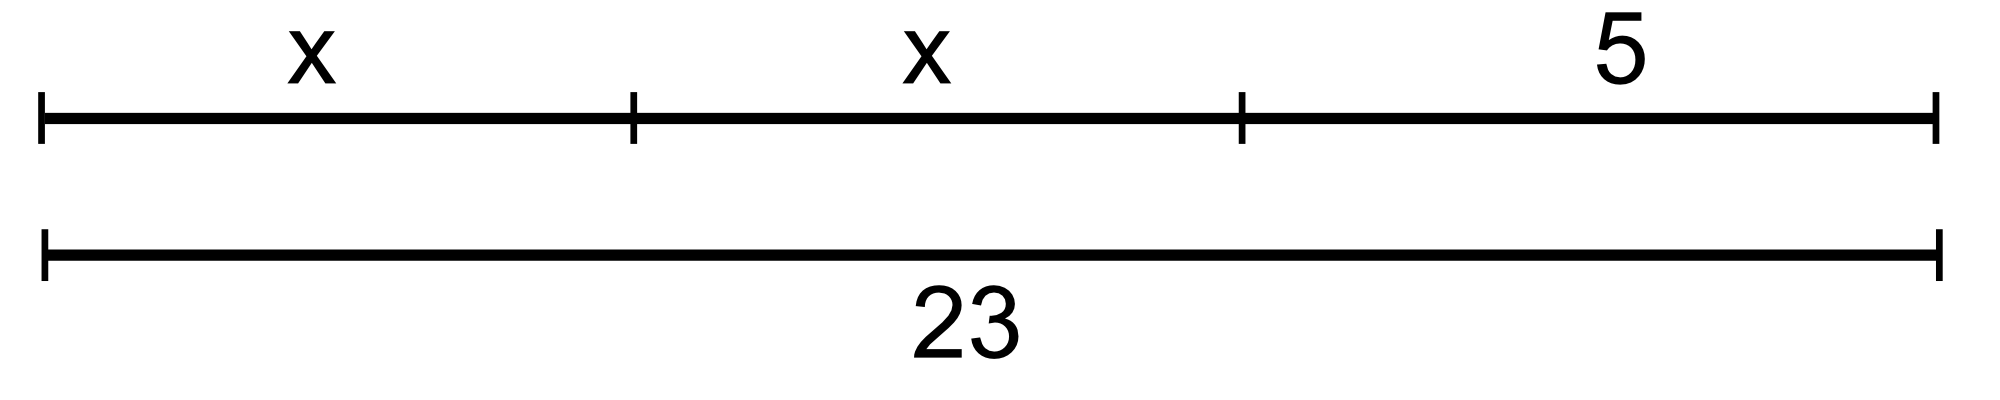 Gleichung wird grafisch dargestellt. Die Gleichung lautet 2x+5=23